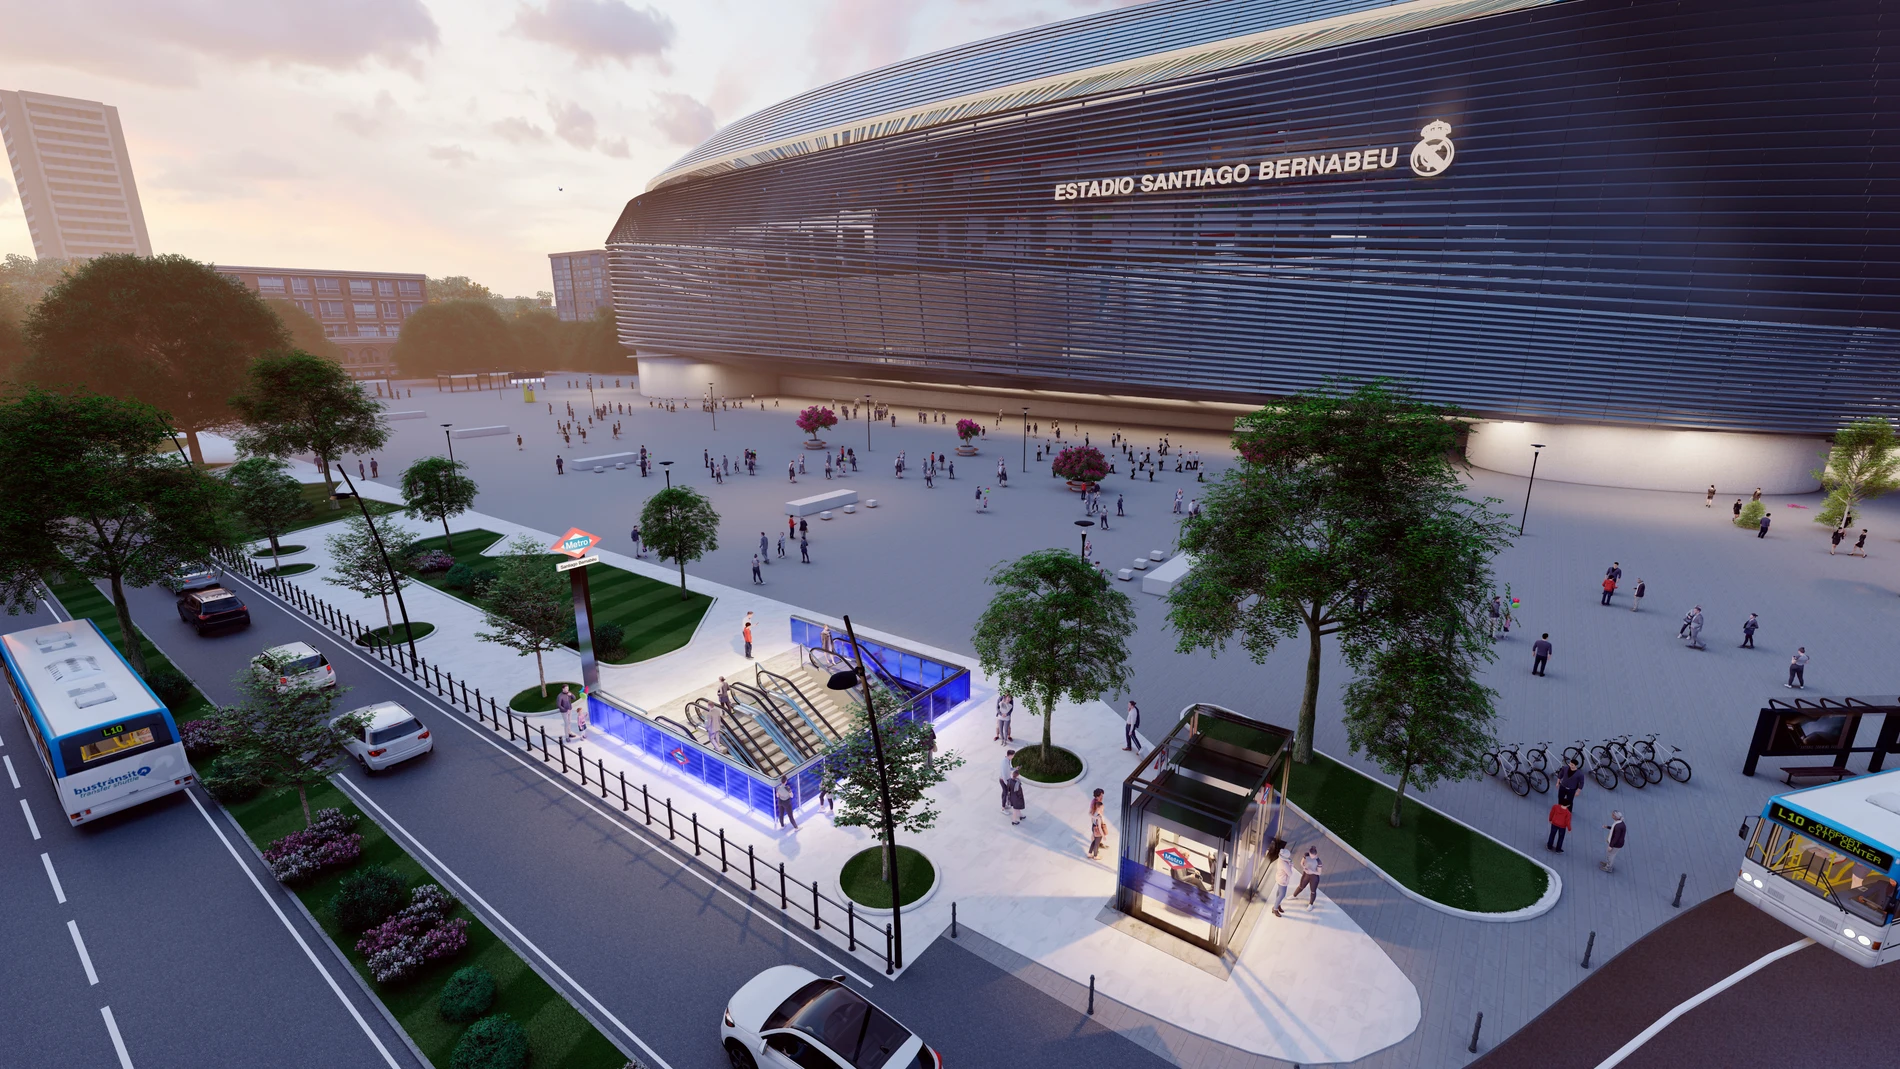 Imagen de los primeros diseños sobre el proyecto urbanístico en torno al estadio Santiago Bernabéu. 